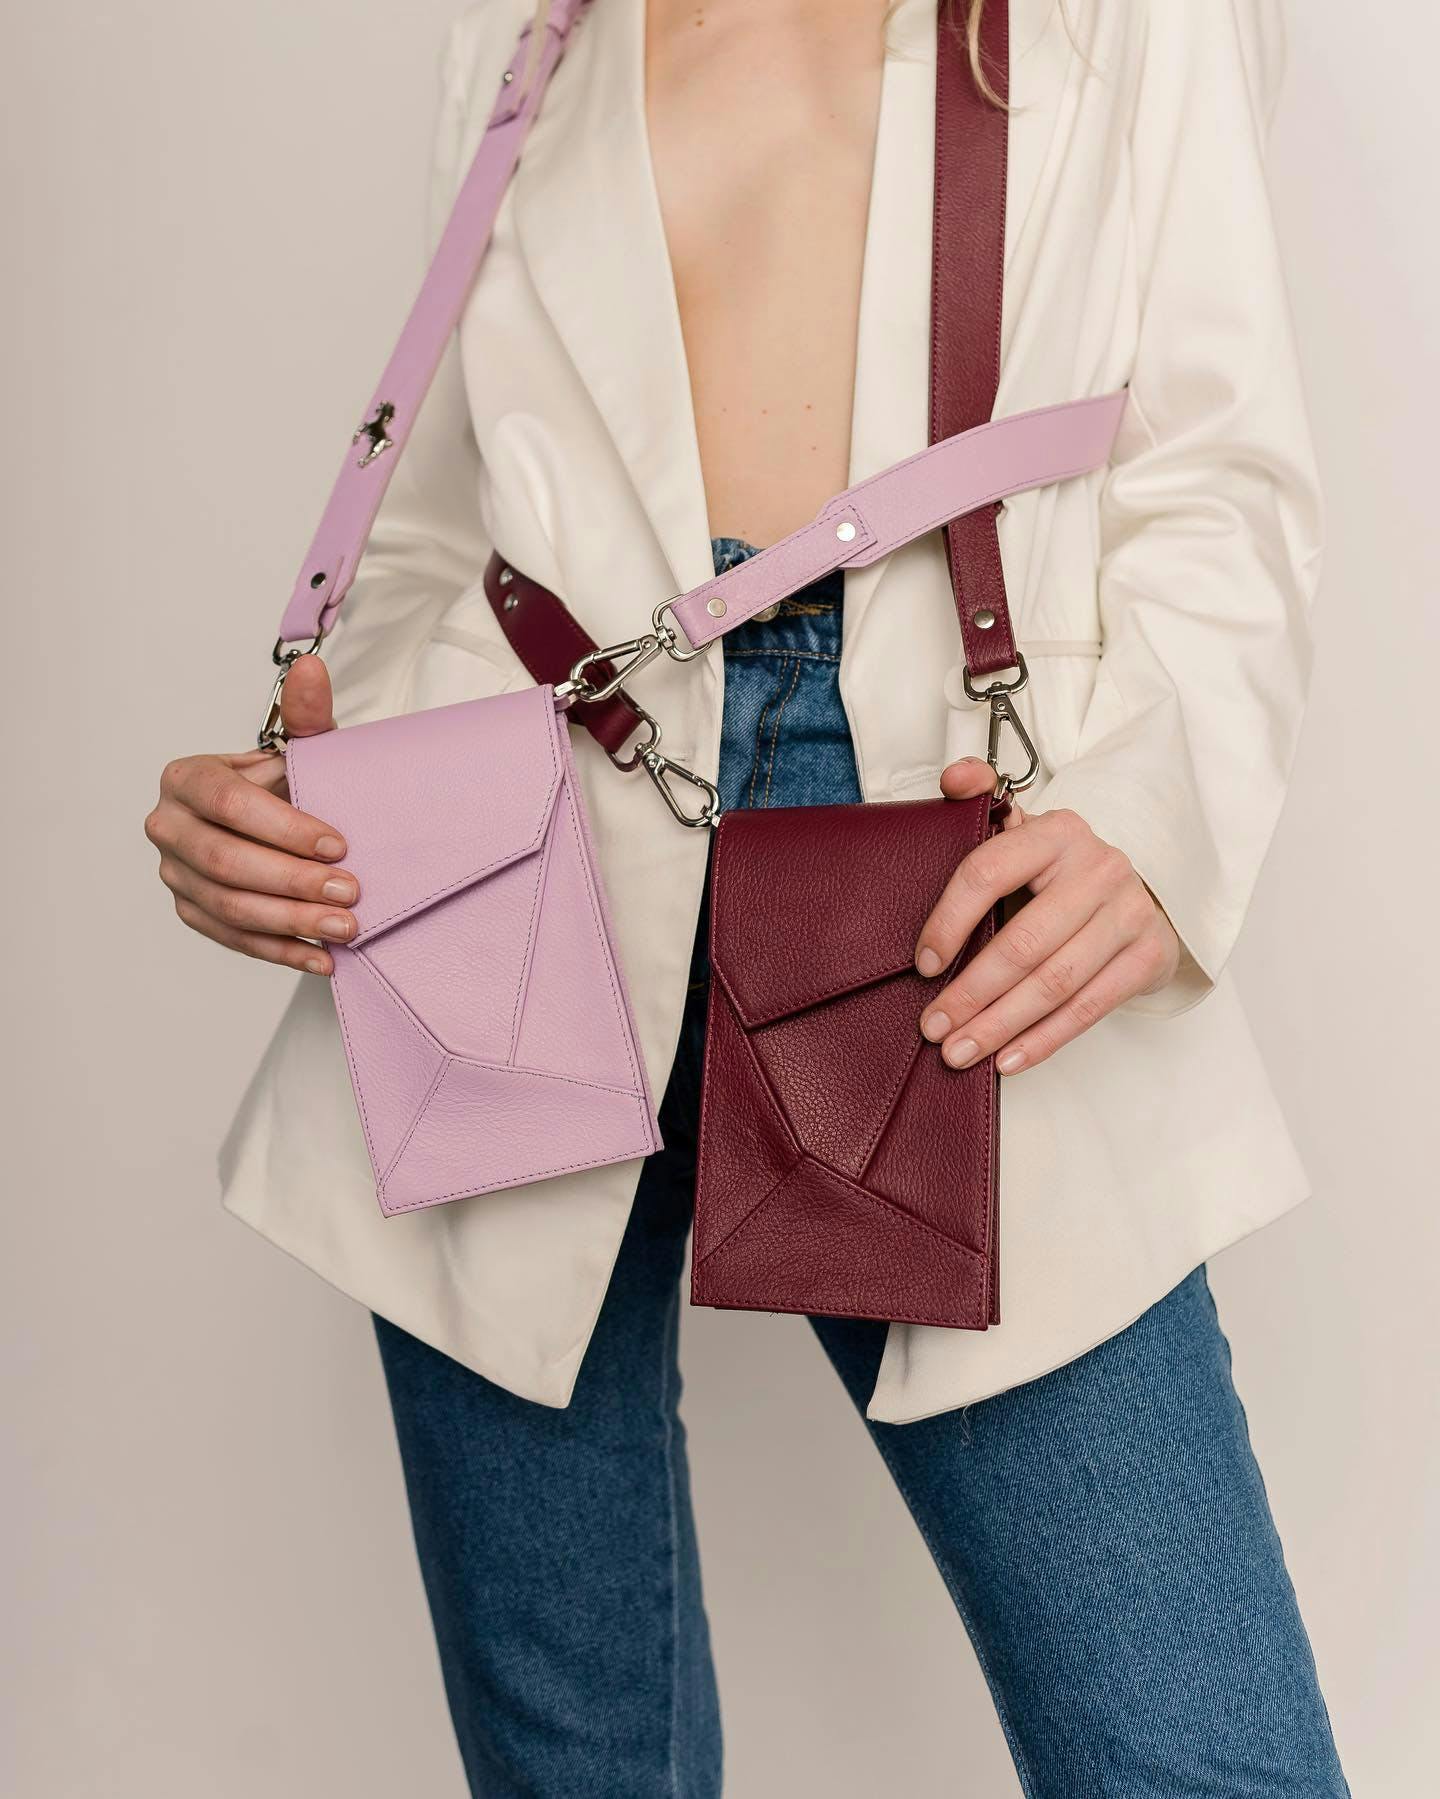 accessories bag handbag purse clothing coat tote bag pants